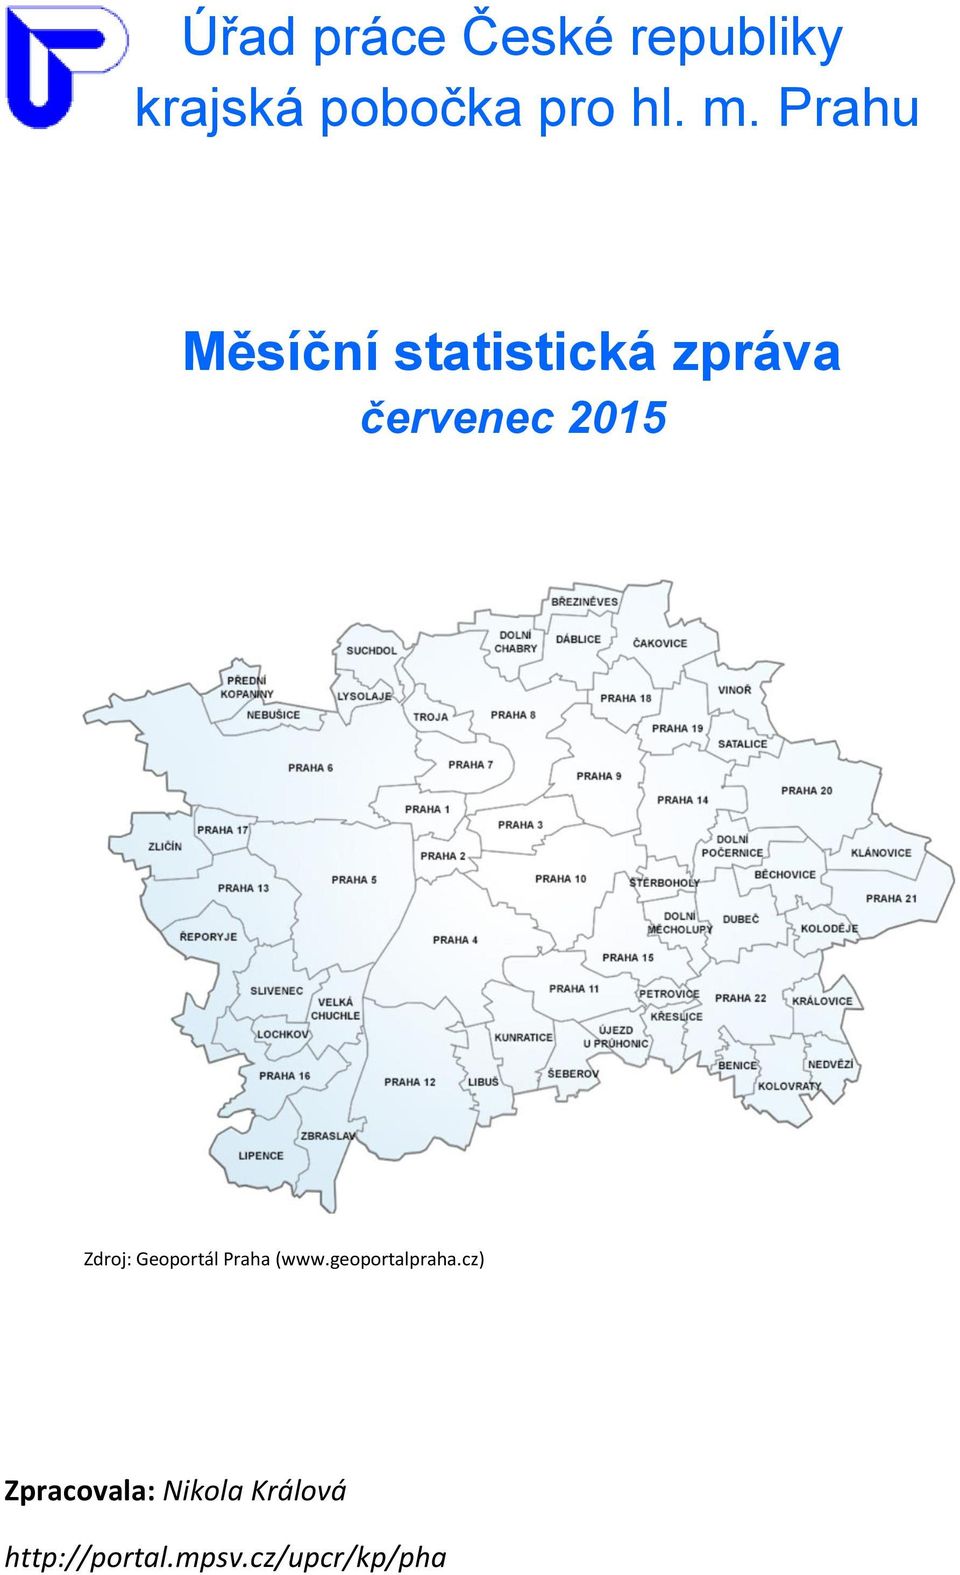 Zdroj: Geoportál Praha (www.geoportalpraha.